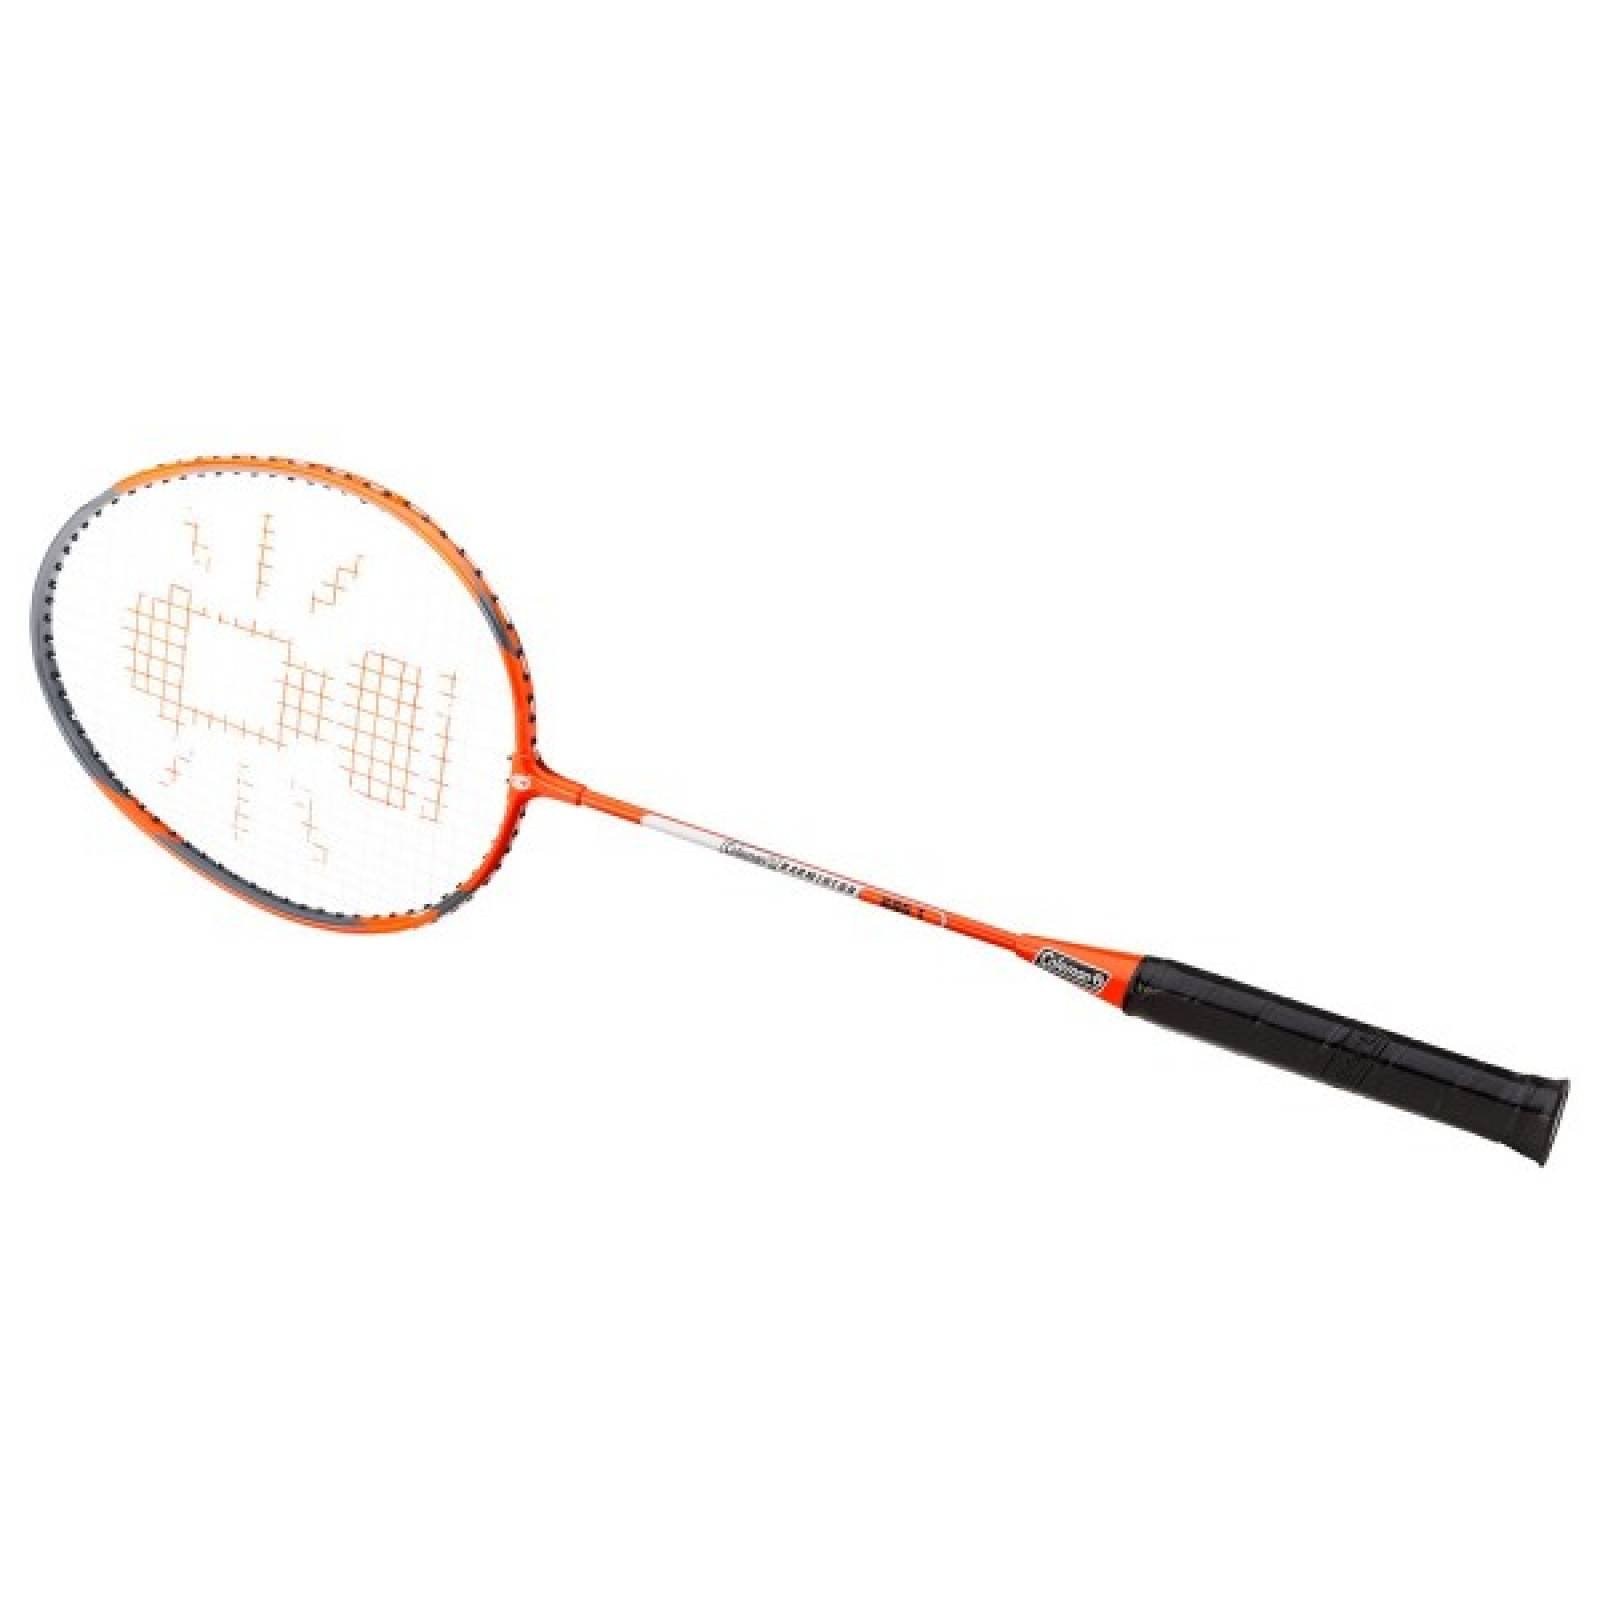 Juego de Badminton 4 Raquetas y Red Coleman 2000012475